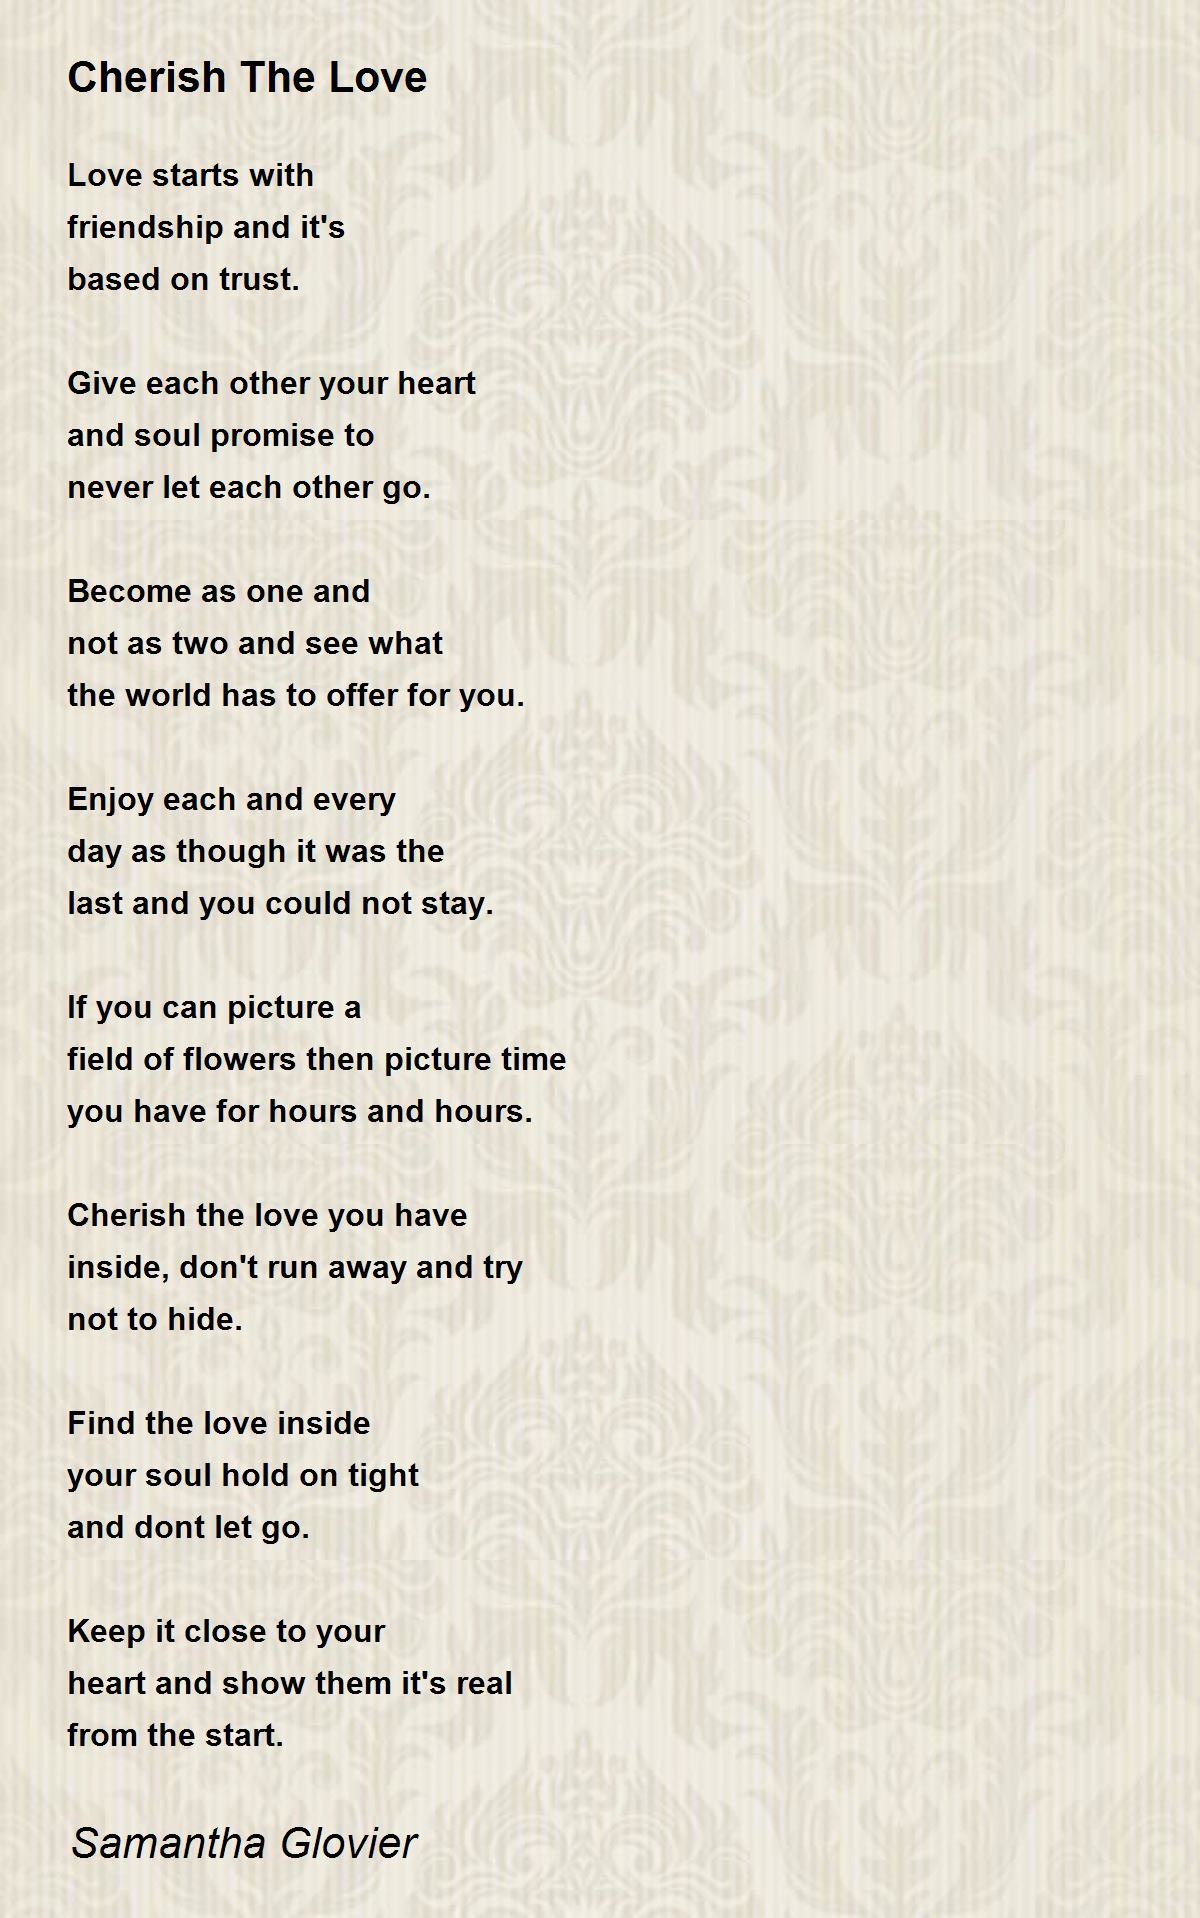 Cherish The Love - Cherish The Love Poem by Samantha Glovier